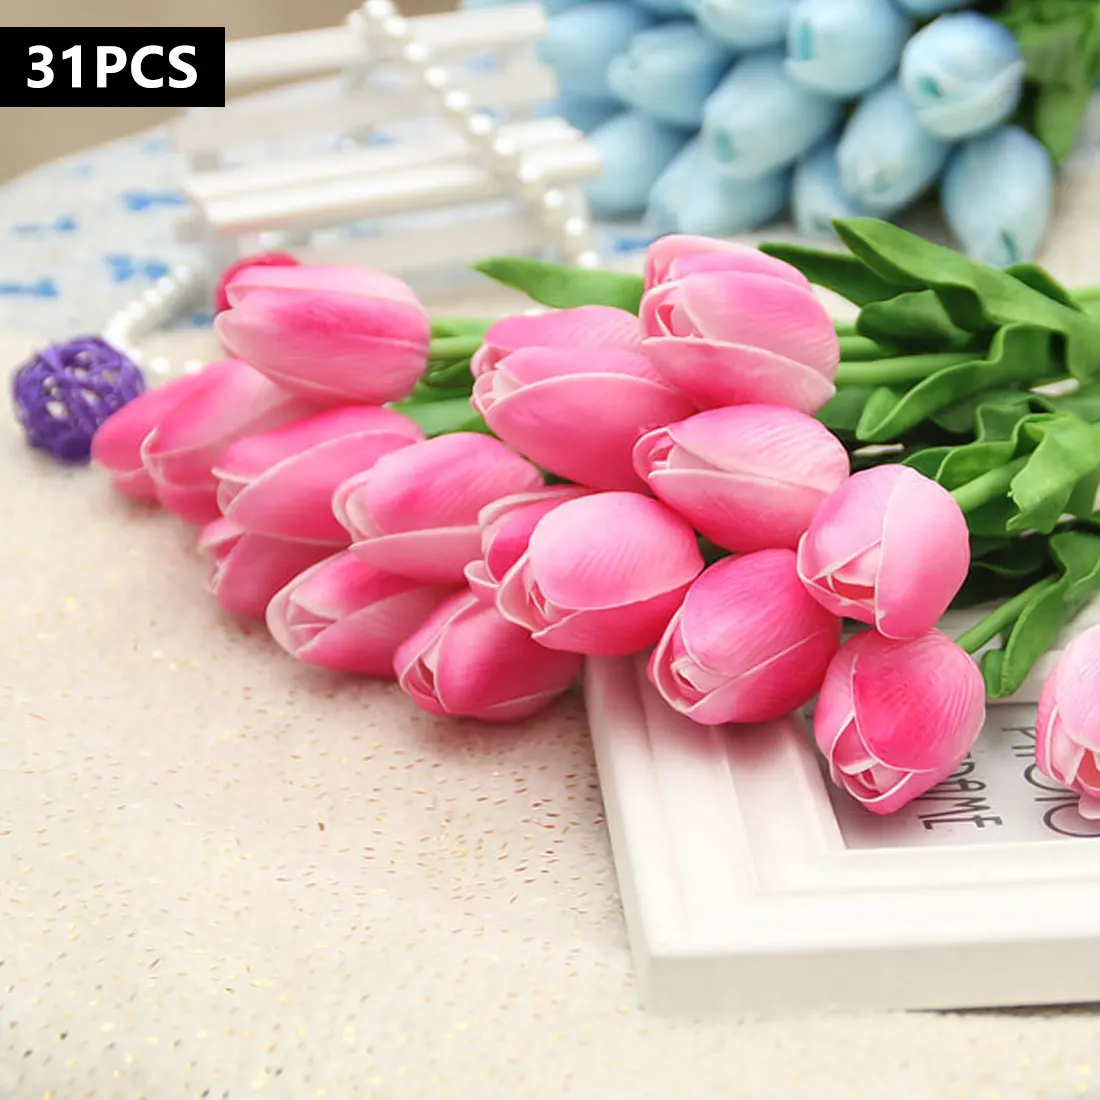 Тюльпаны Искусственные цветы 31 шт. полиуретан на ощупь как настоящий искусственный пункт Декоративный букет Тюльпан для дома Свадебные украшения - Цвет: Dark Pink